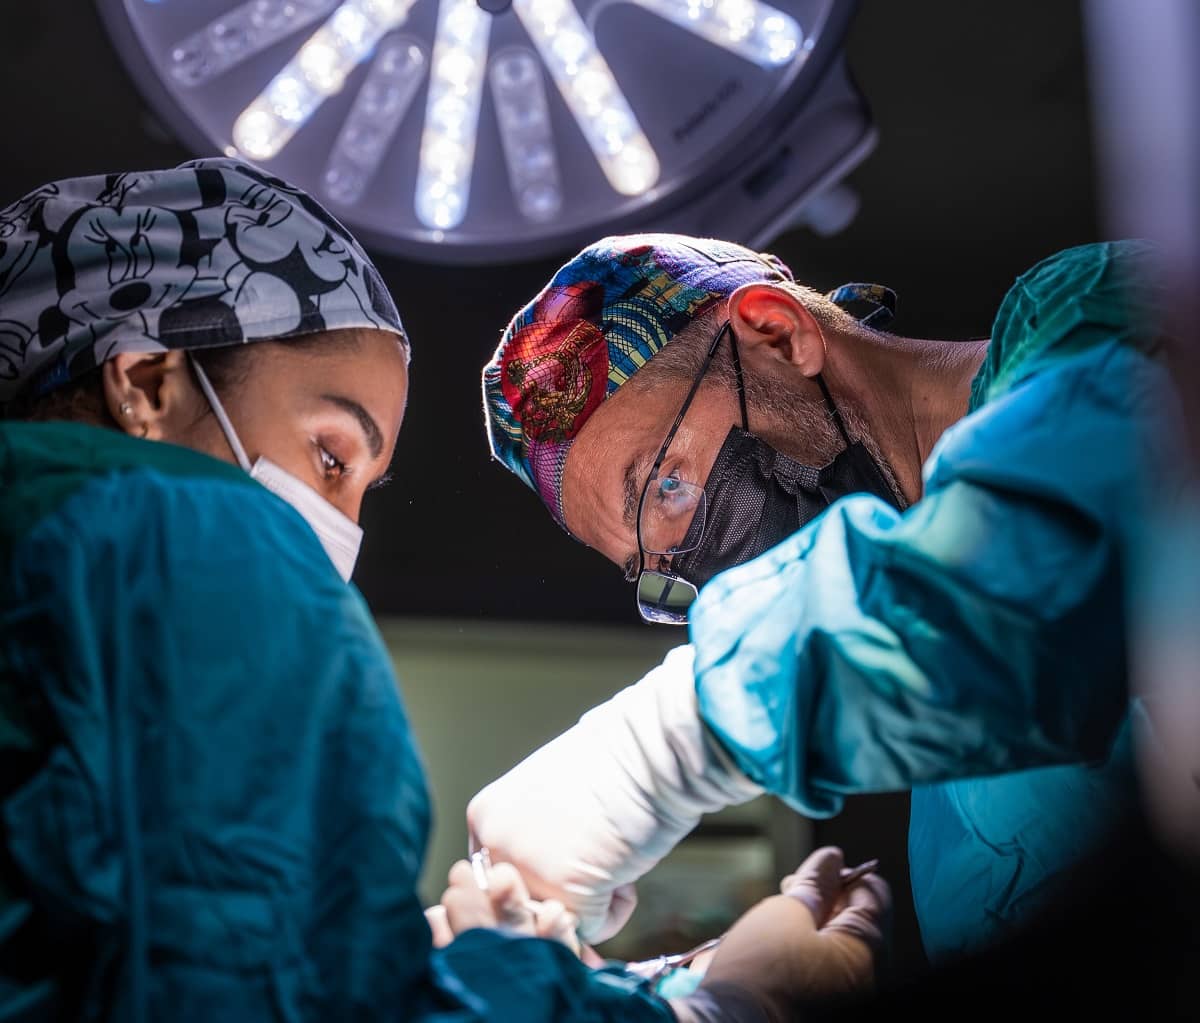 Unos cirujanos en plena operación de quirófano, foto de Akram Huseyn en Unsplash